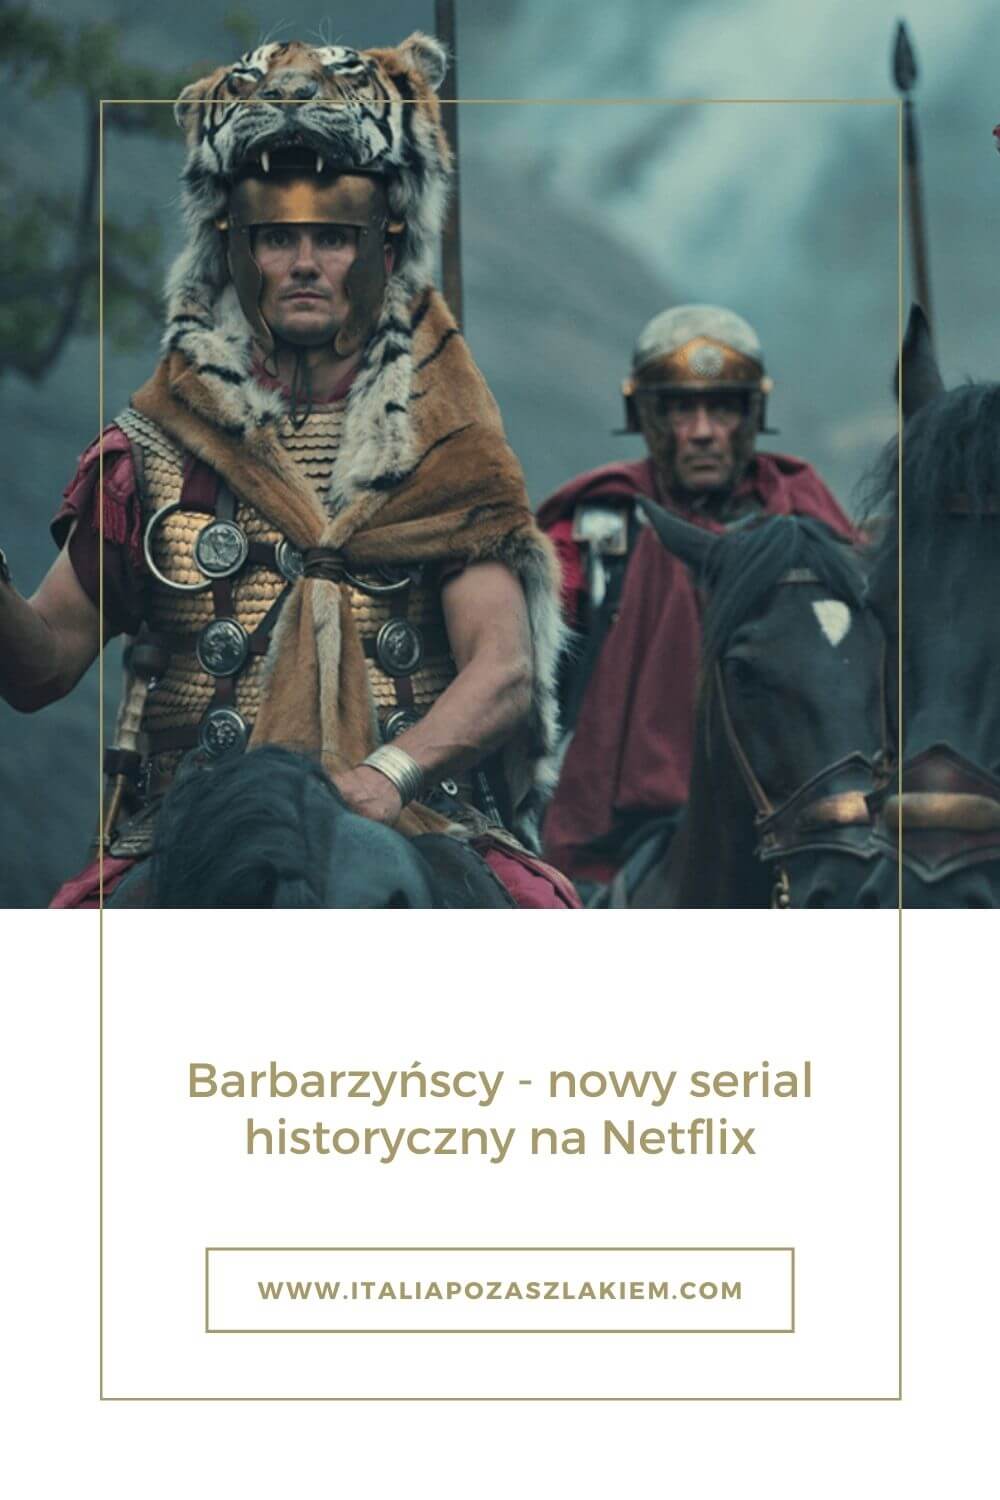 Barbarzyńcy, serial historyczny, Netflix